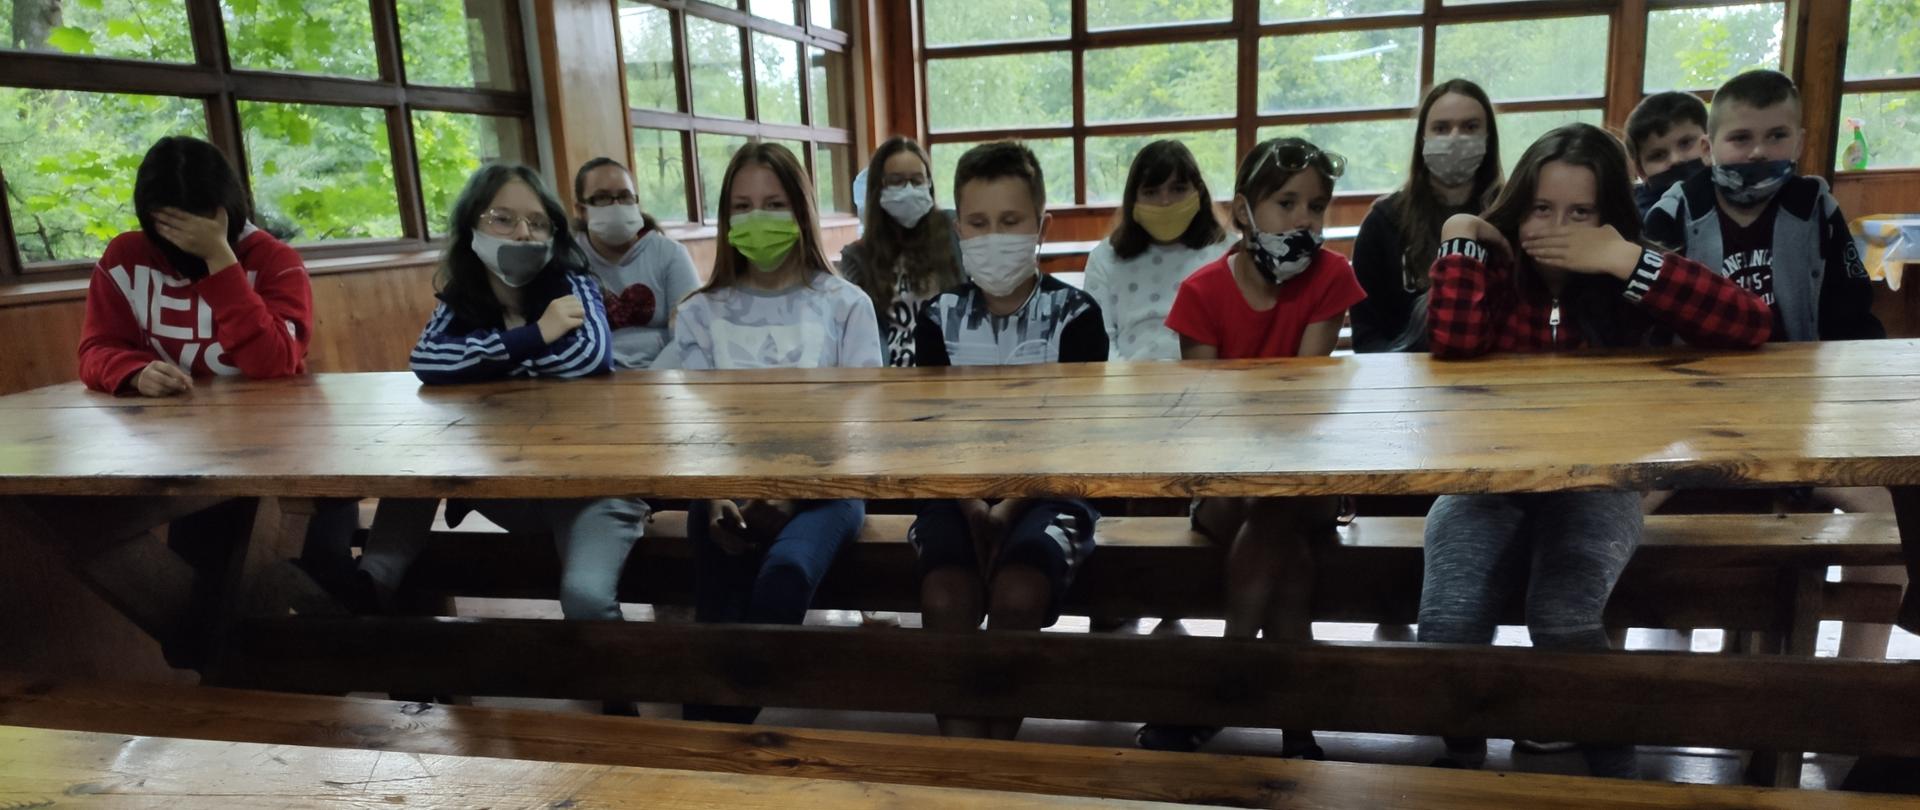 Grupa młodzieży, siedząca przy drewnianym stole podczas szkolenia z zakresu przestrzegania przepisów przeciwpożarowych i zasad bezpiecznego zachowania się podczas wystąpienia sytuacji kryzysowej